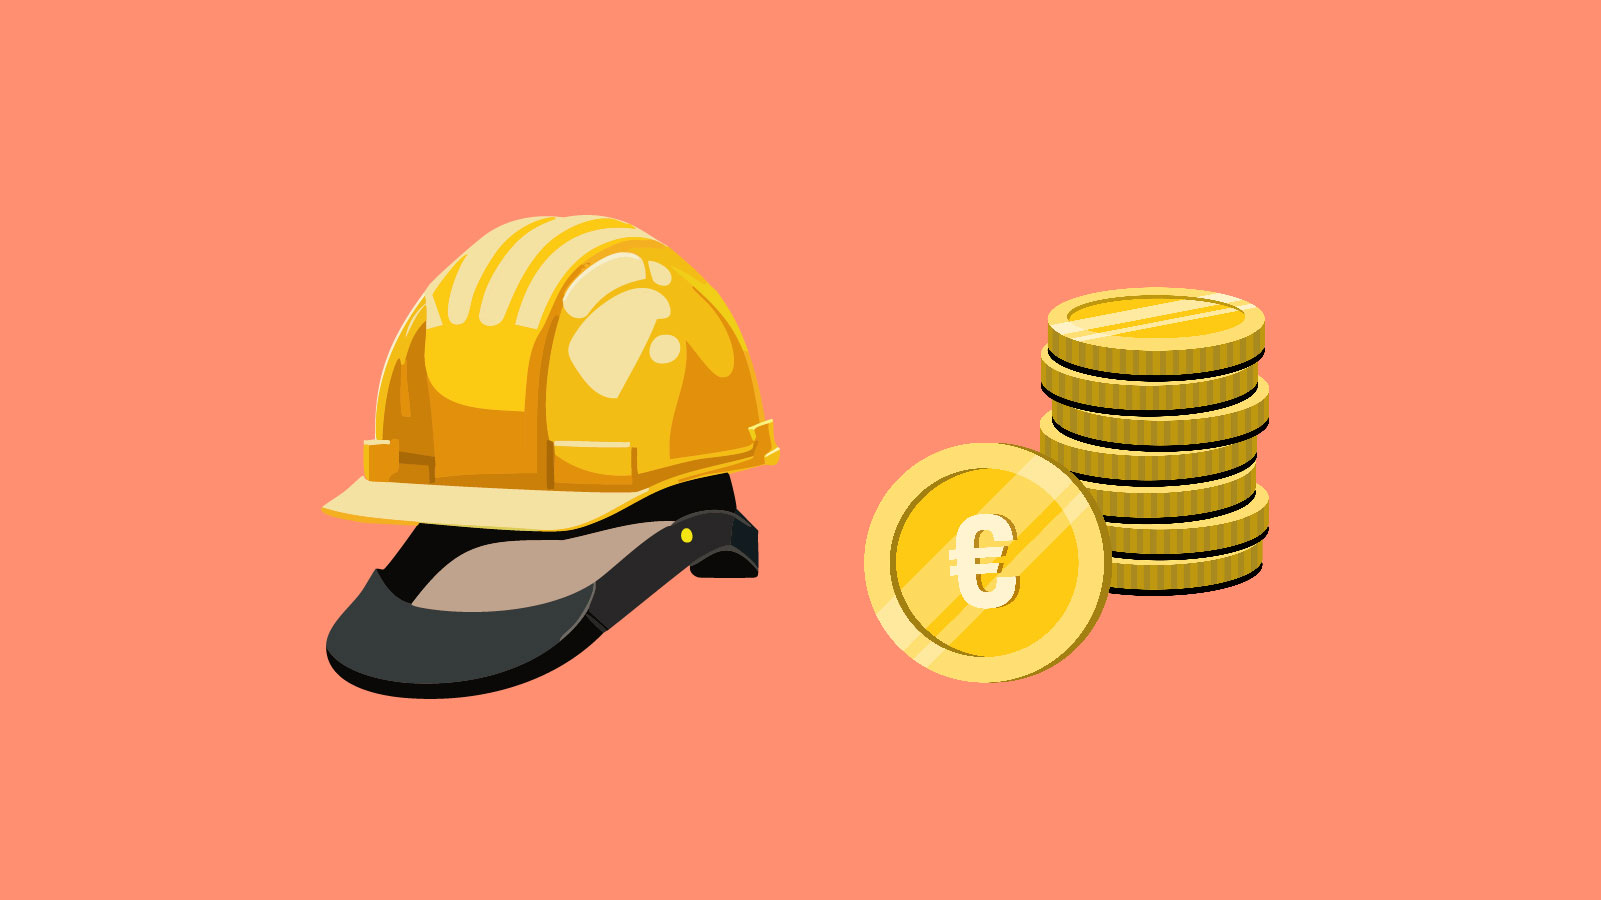 Illustration eines gelben Schutzhelms und mehrere Euro-Münzen, die sinnbildlich für Artikel "Wie viel verdient man im Mittelstand?" steht.